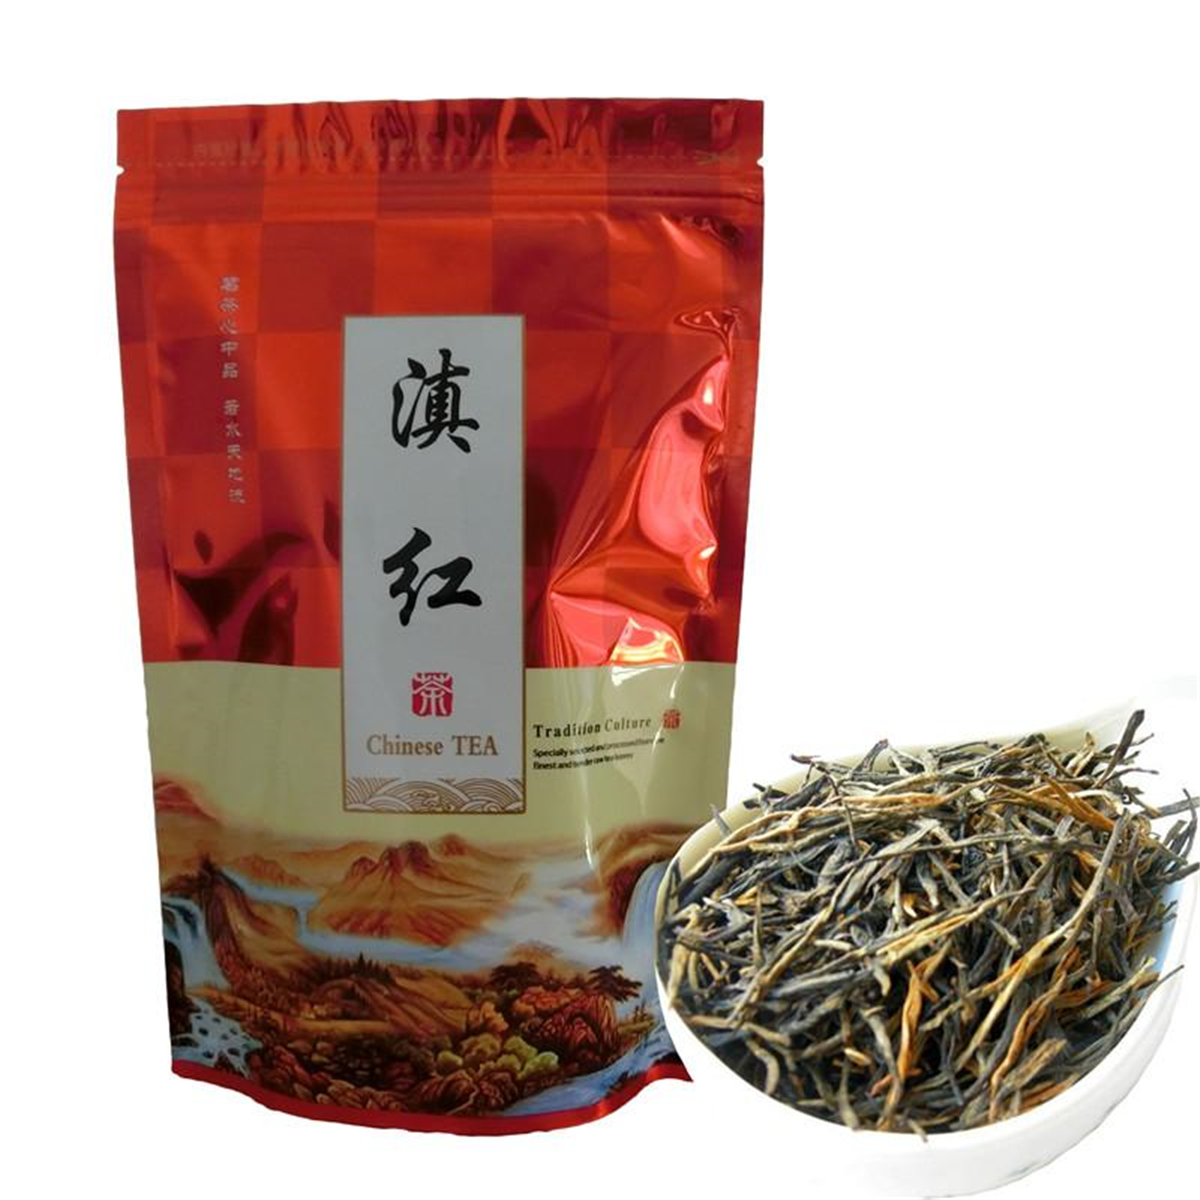 C-HC042 Classical 58 series black tea 250g Premium Dian Hong, Famous Yunnan Black Tea dianhong dianhong